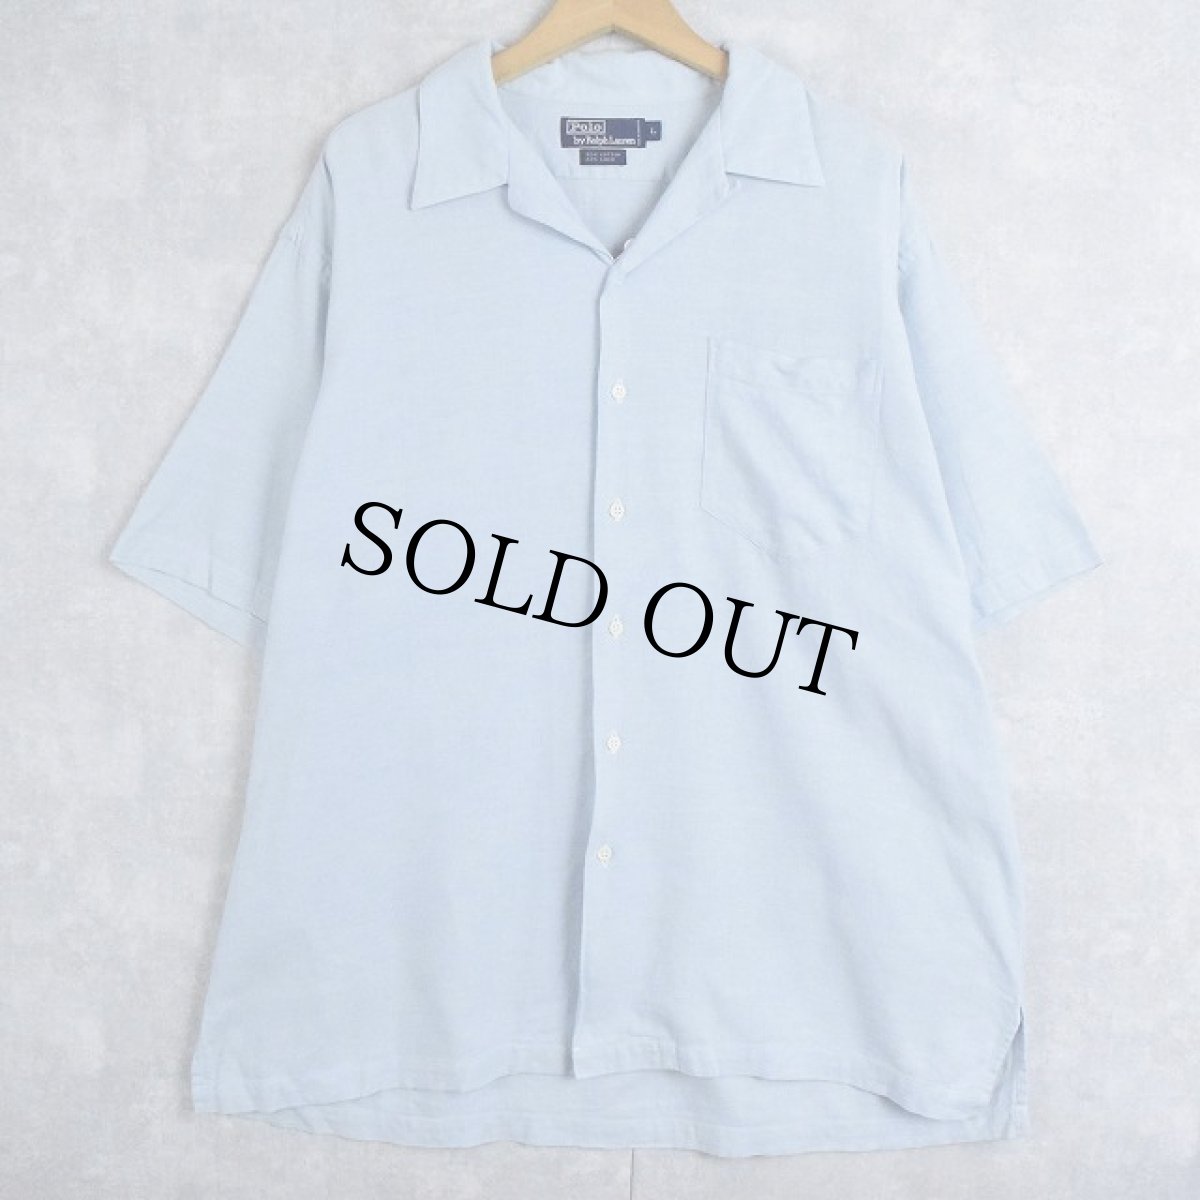 画像1: 90's POLO Ralph Lauren コットン×リネン オープンカラーシャツ L (1)